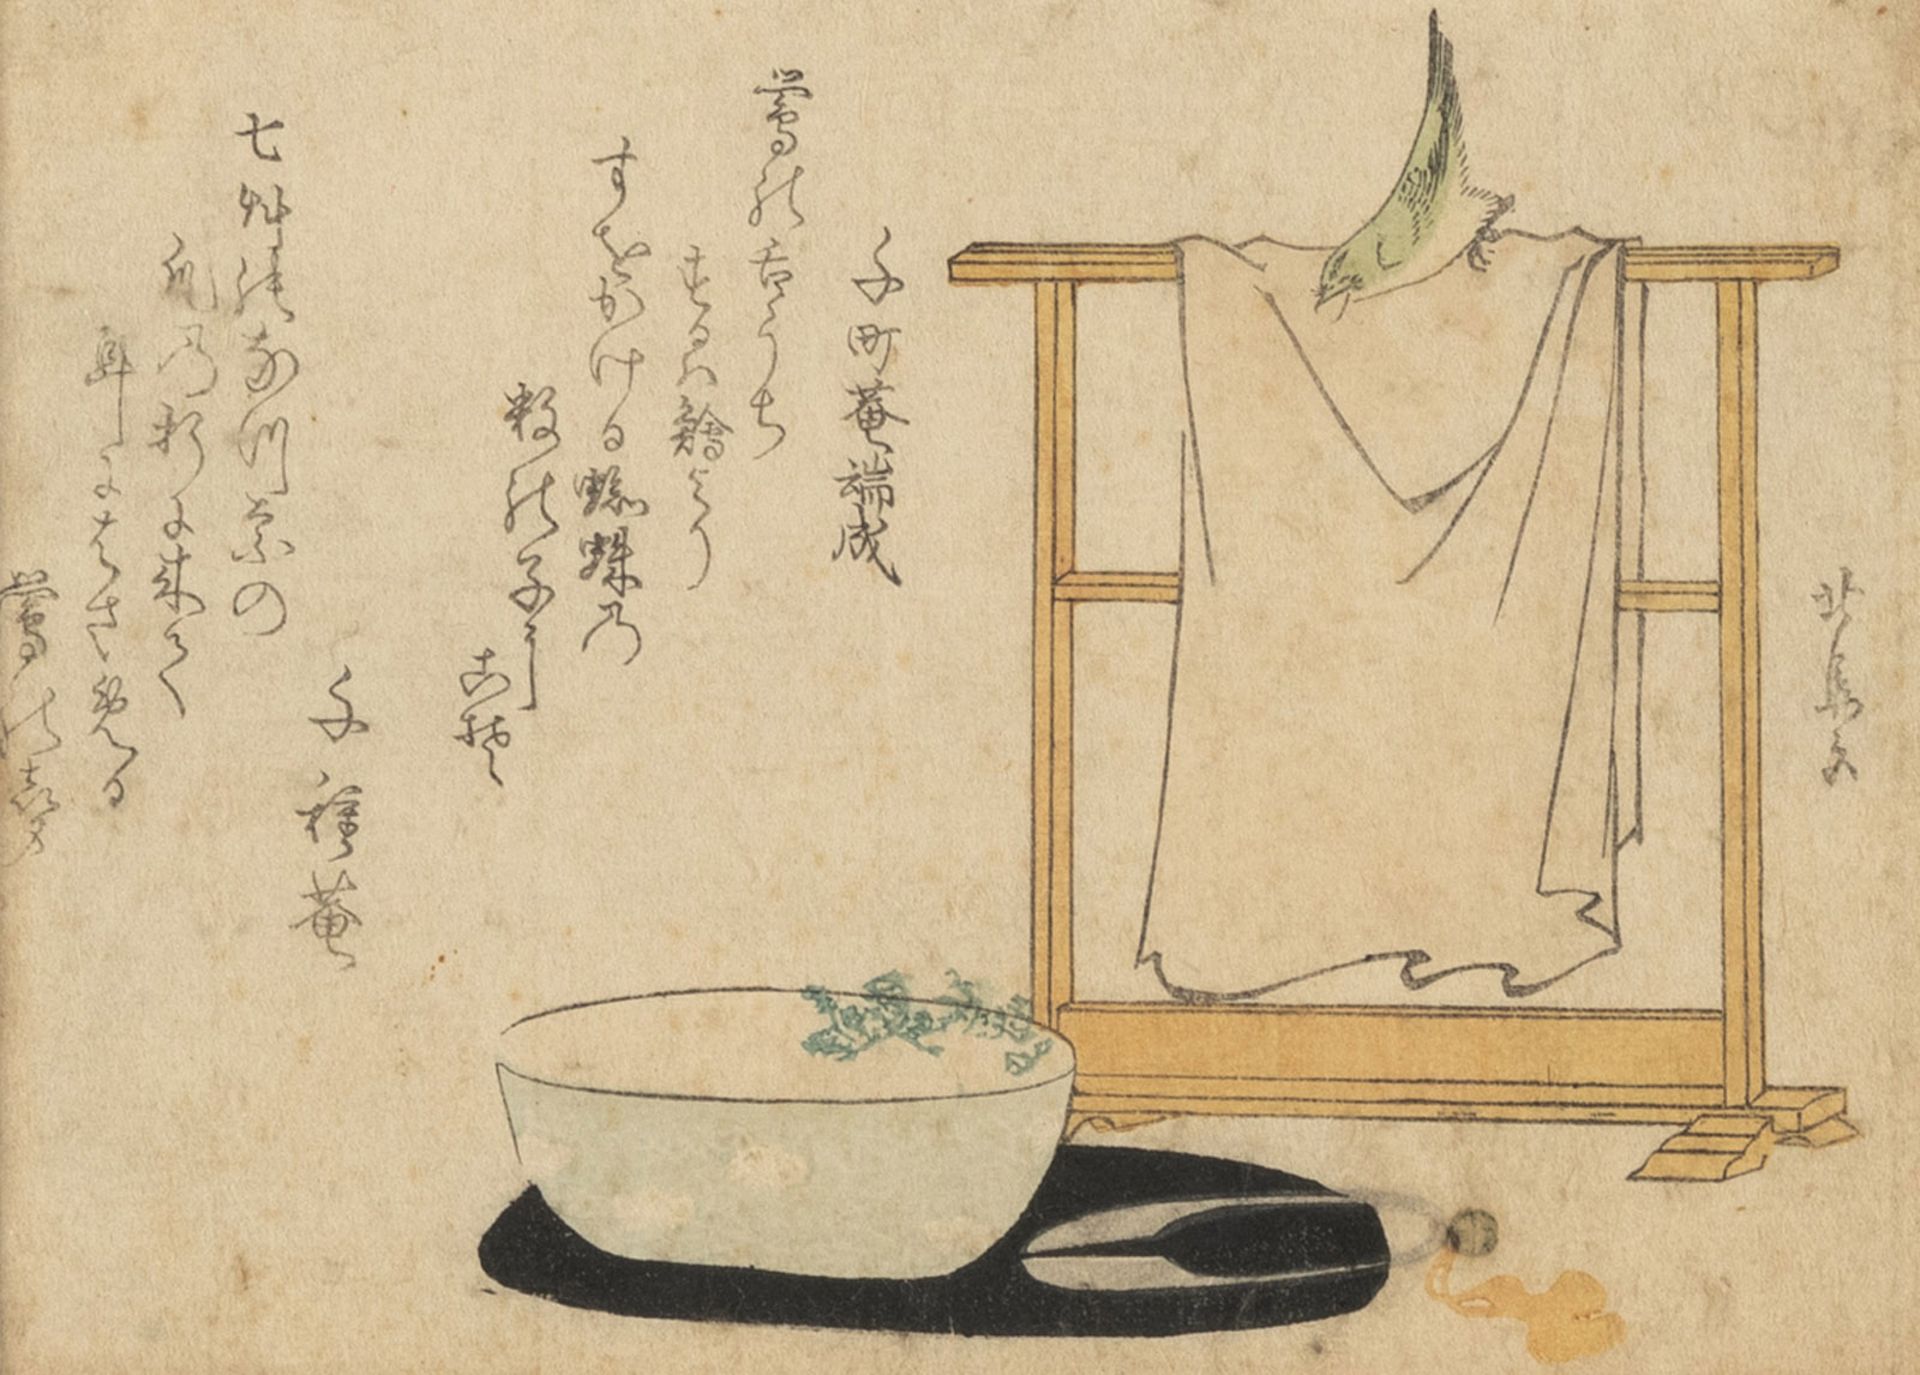 A SURIMONO BY TEISAI HOKUBA